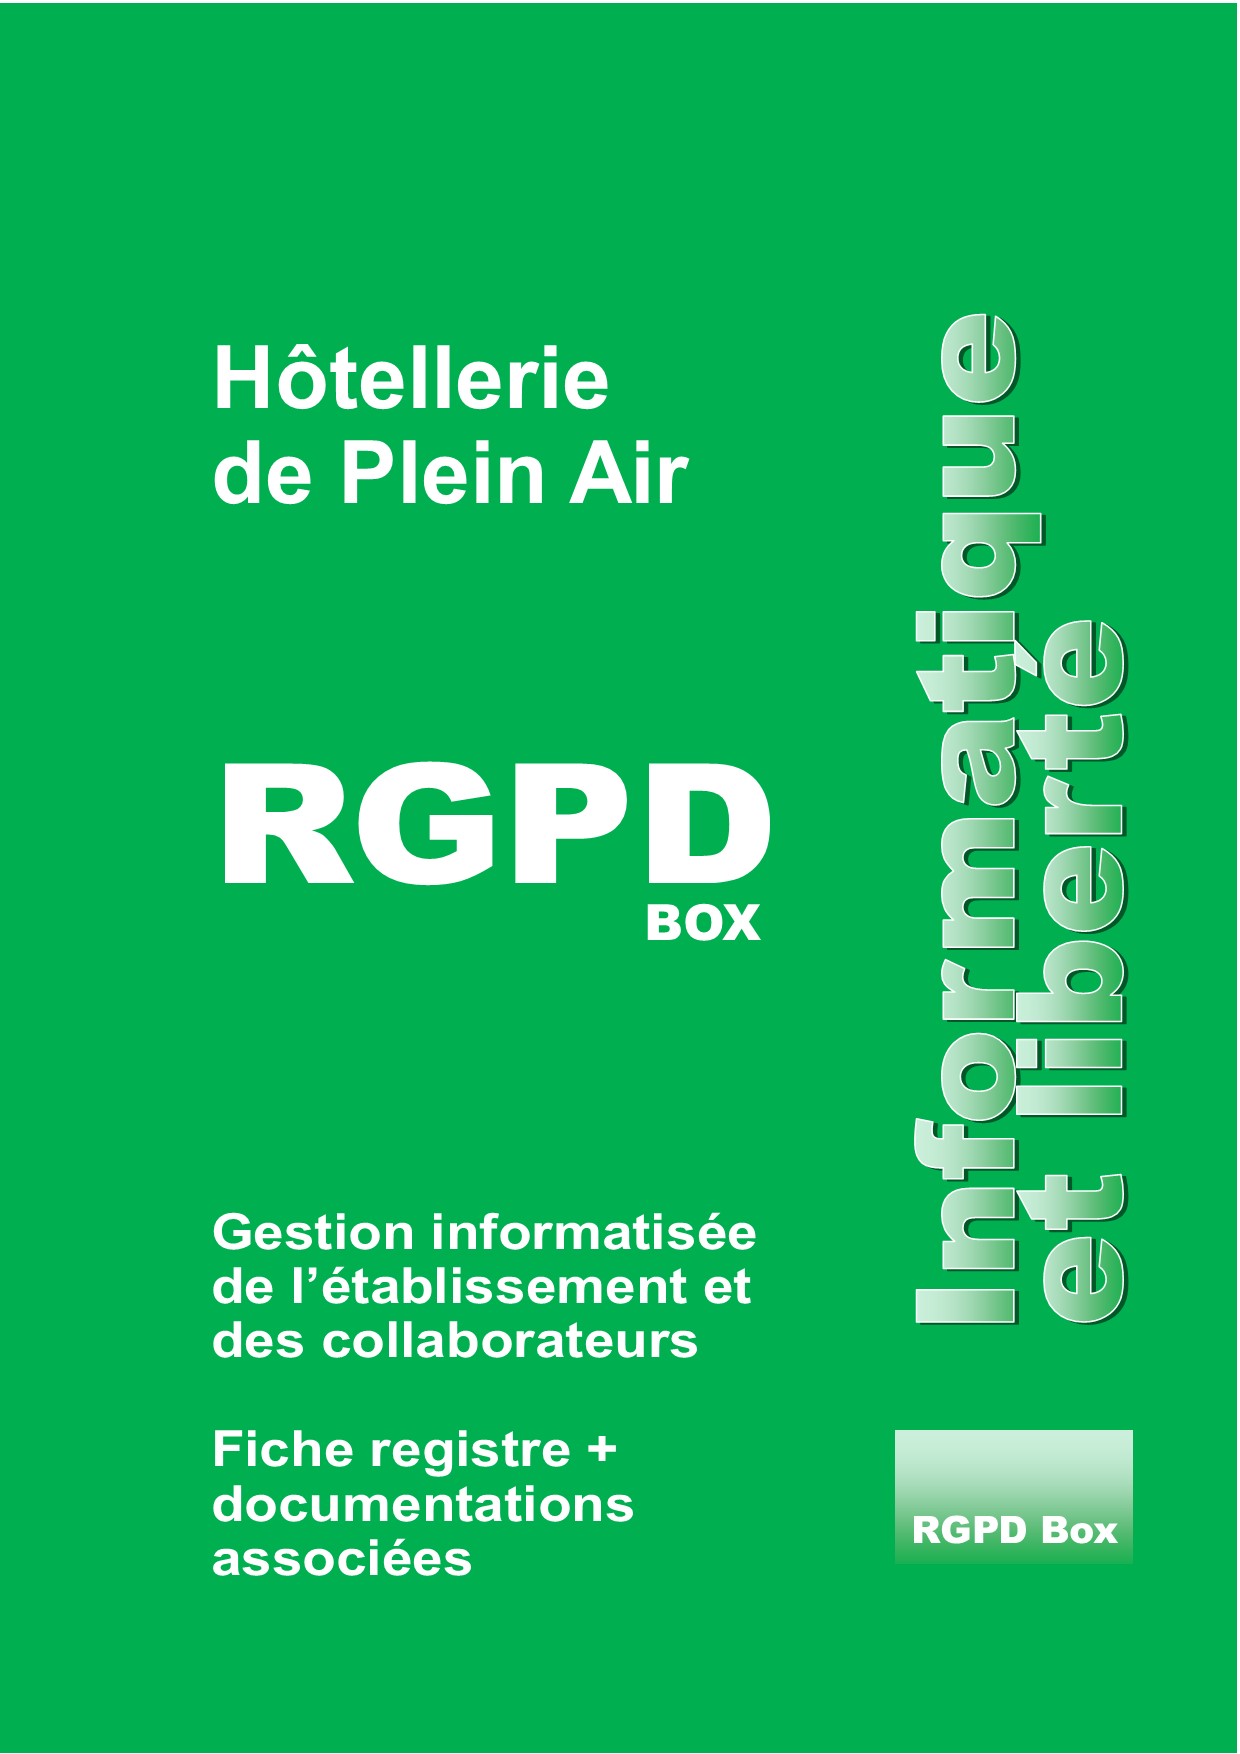 Pack de conformité RGPDBox.HPA - Le RGPD en Hôtellerie de Plein Air